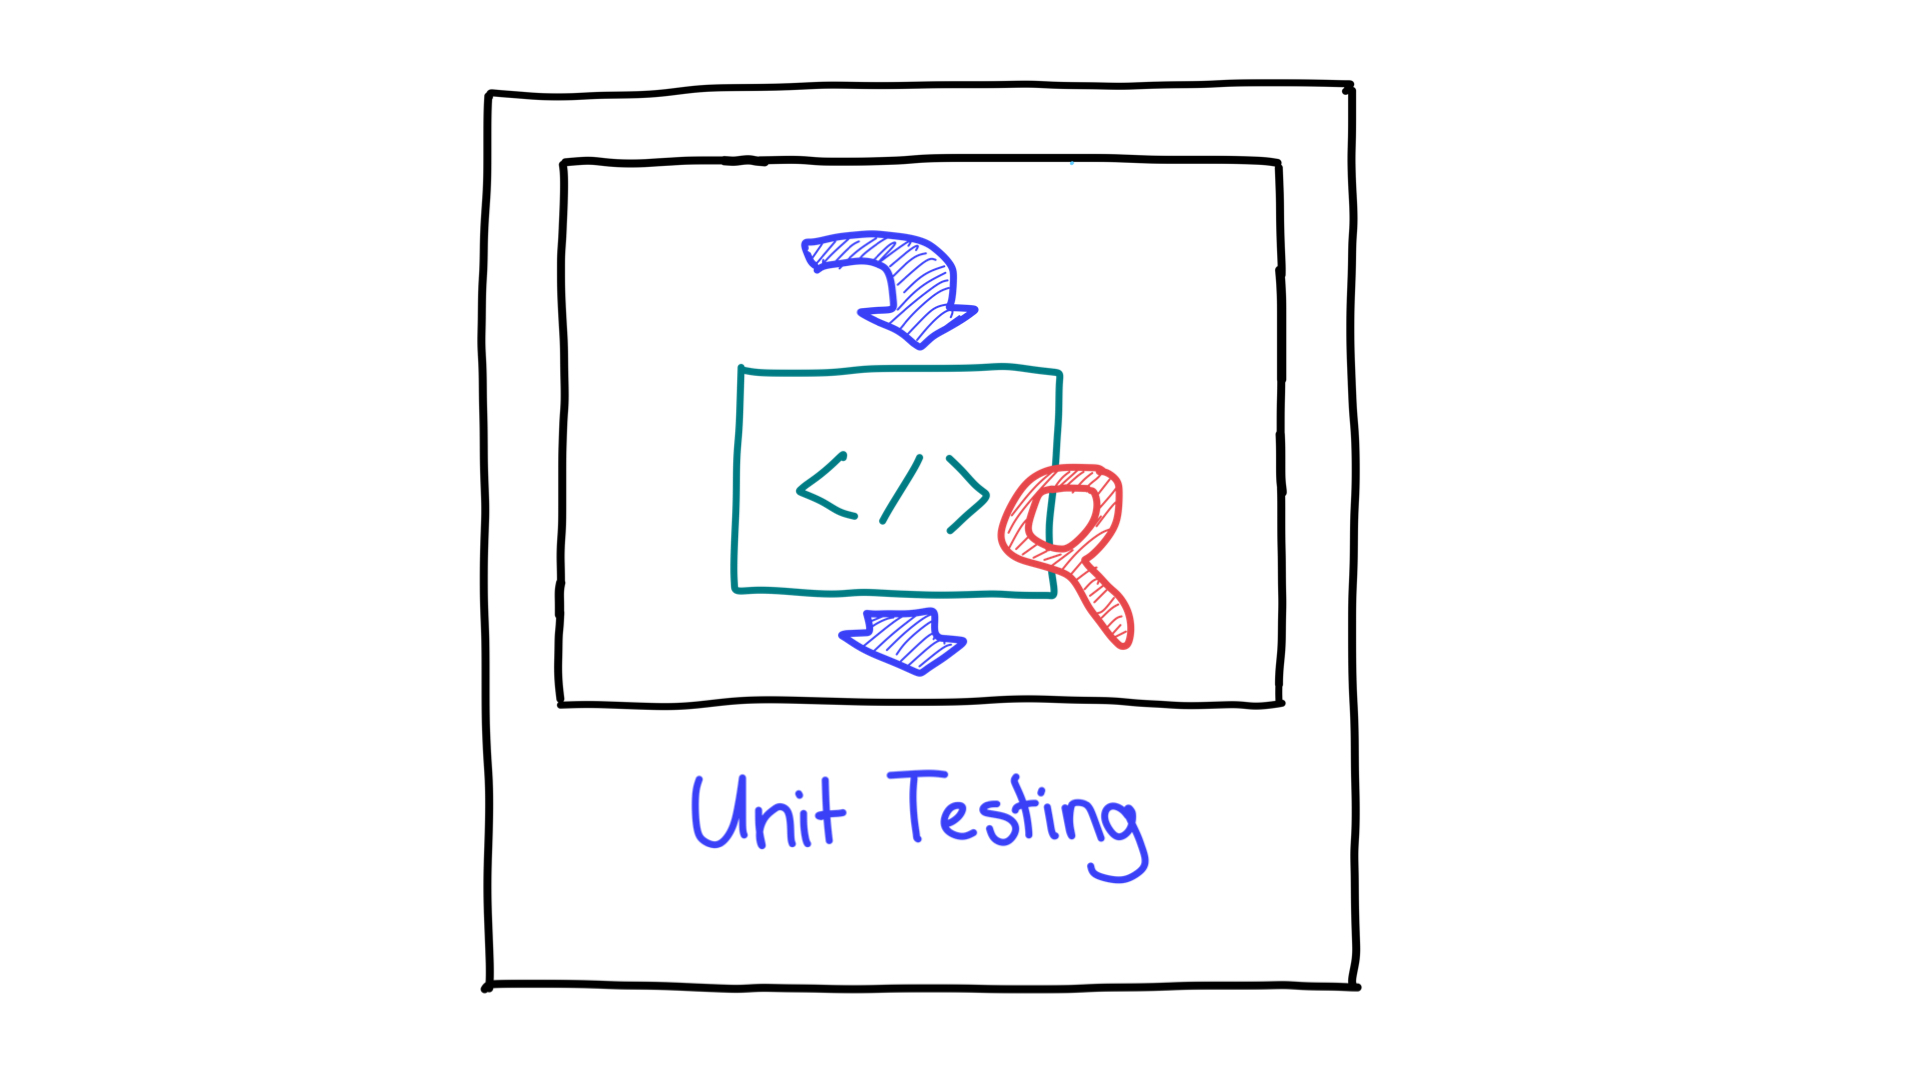 Représentation simplifiée des tests unitaires montrant les entrées et les sorties.